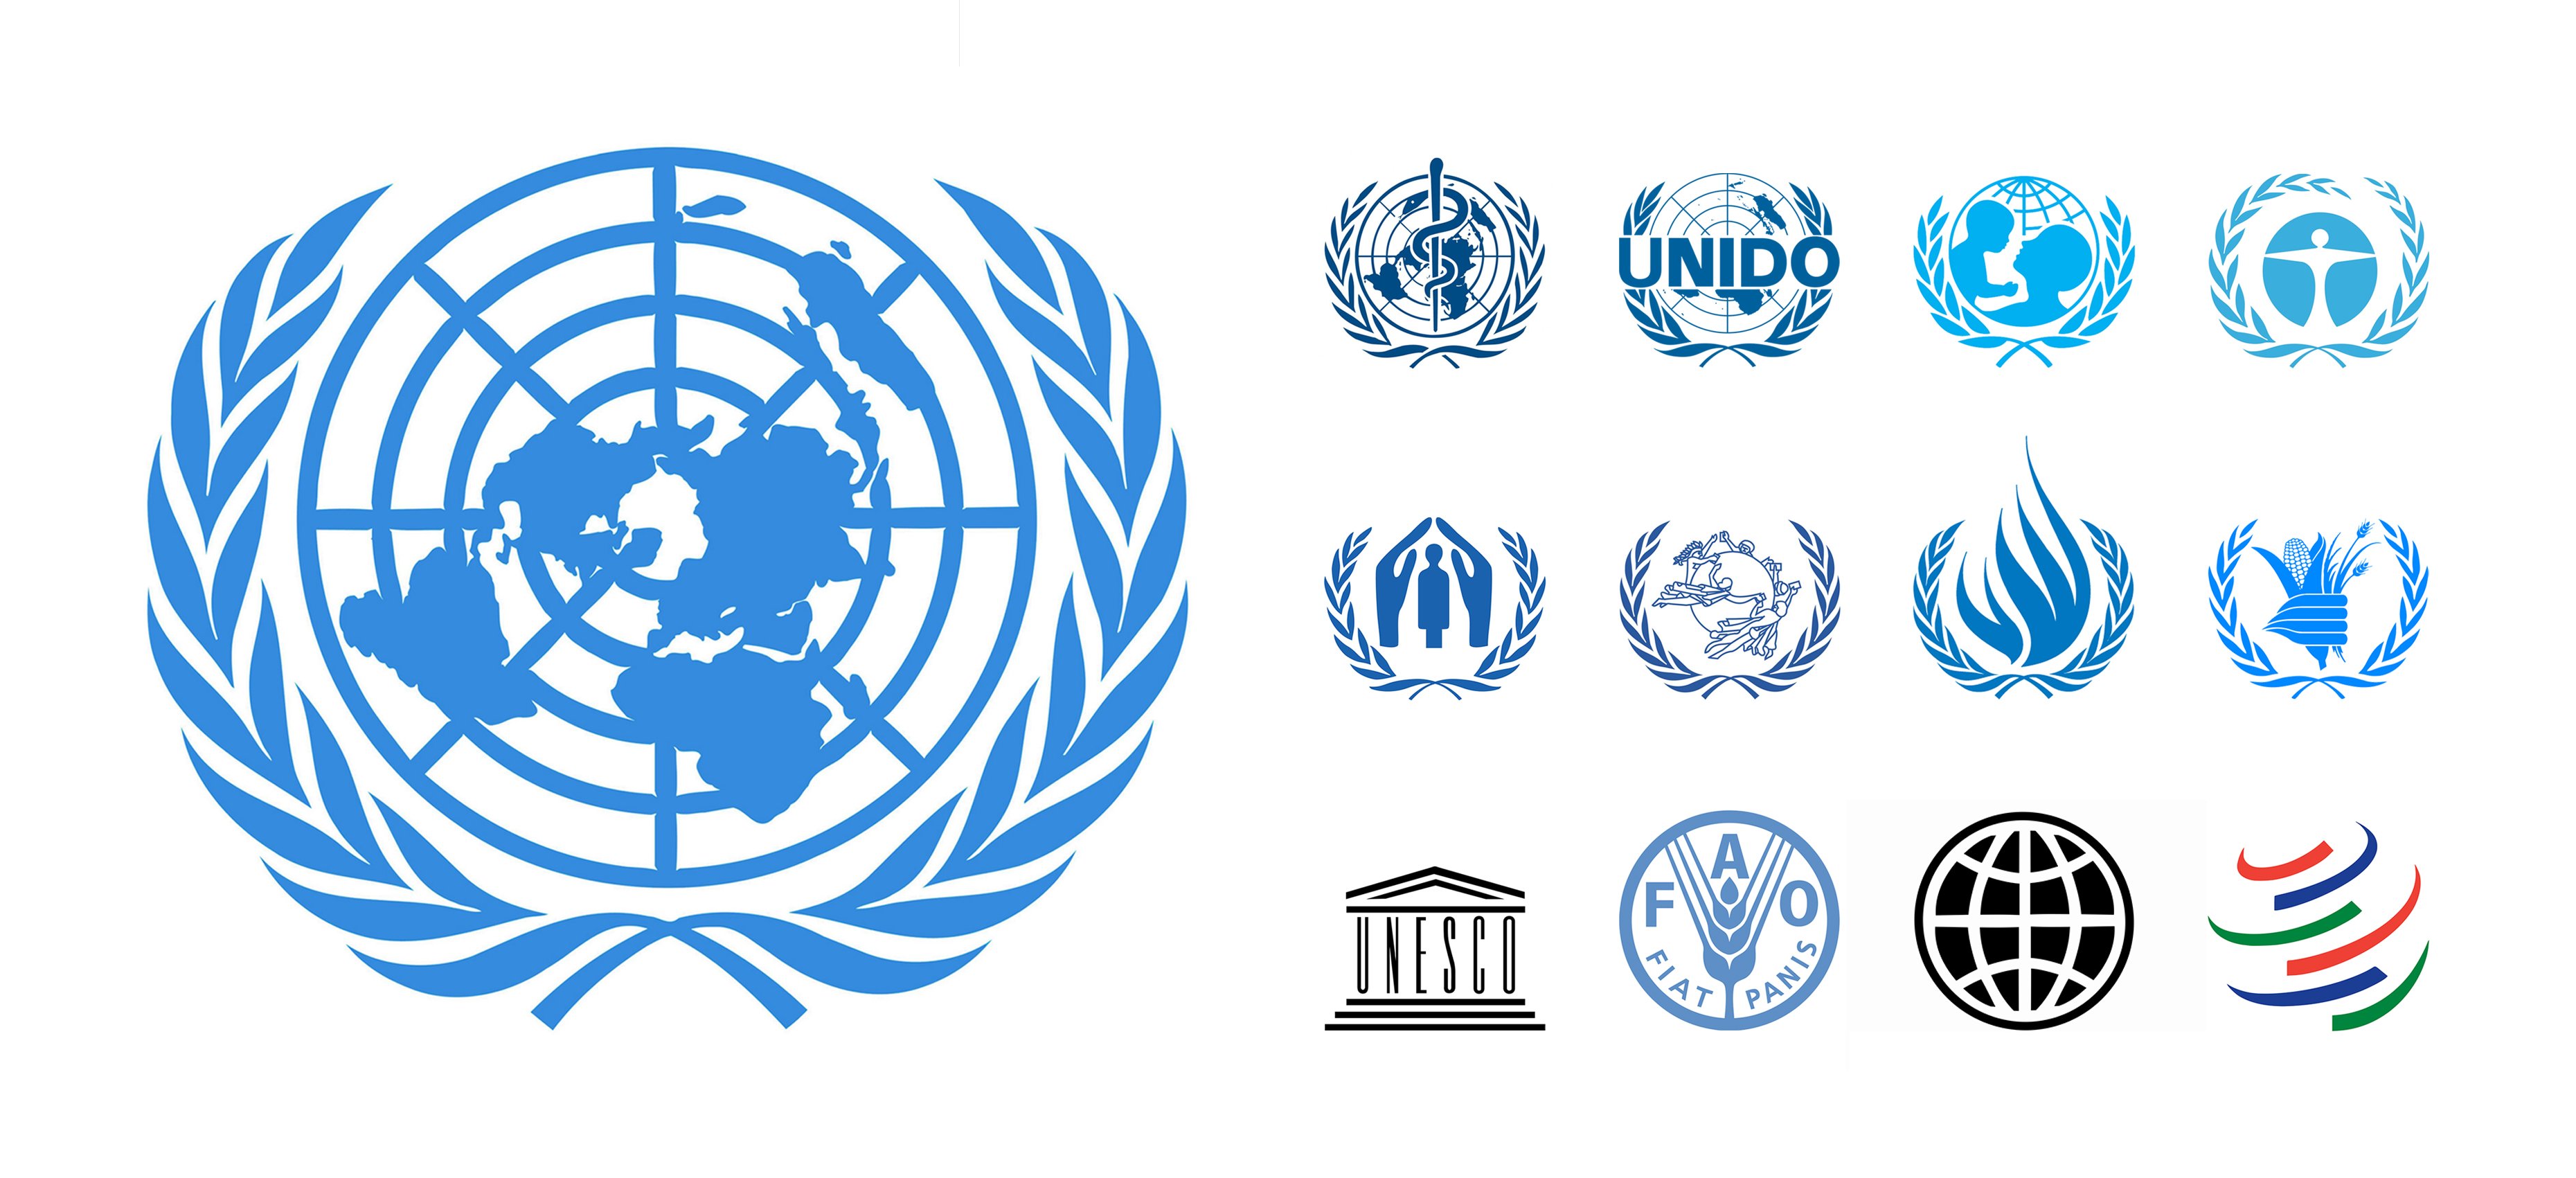 Негосударственных международных организаций. Организация Объединенных наций ЮНЕСКО. Лого организация Объединенных наций (ООН). Международные экономические организации эмблемы.